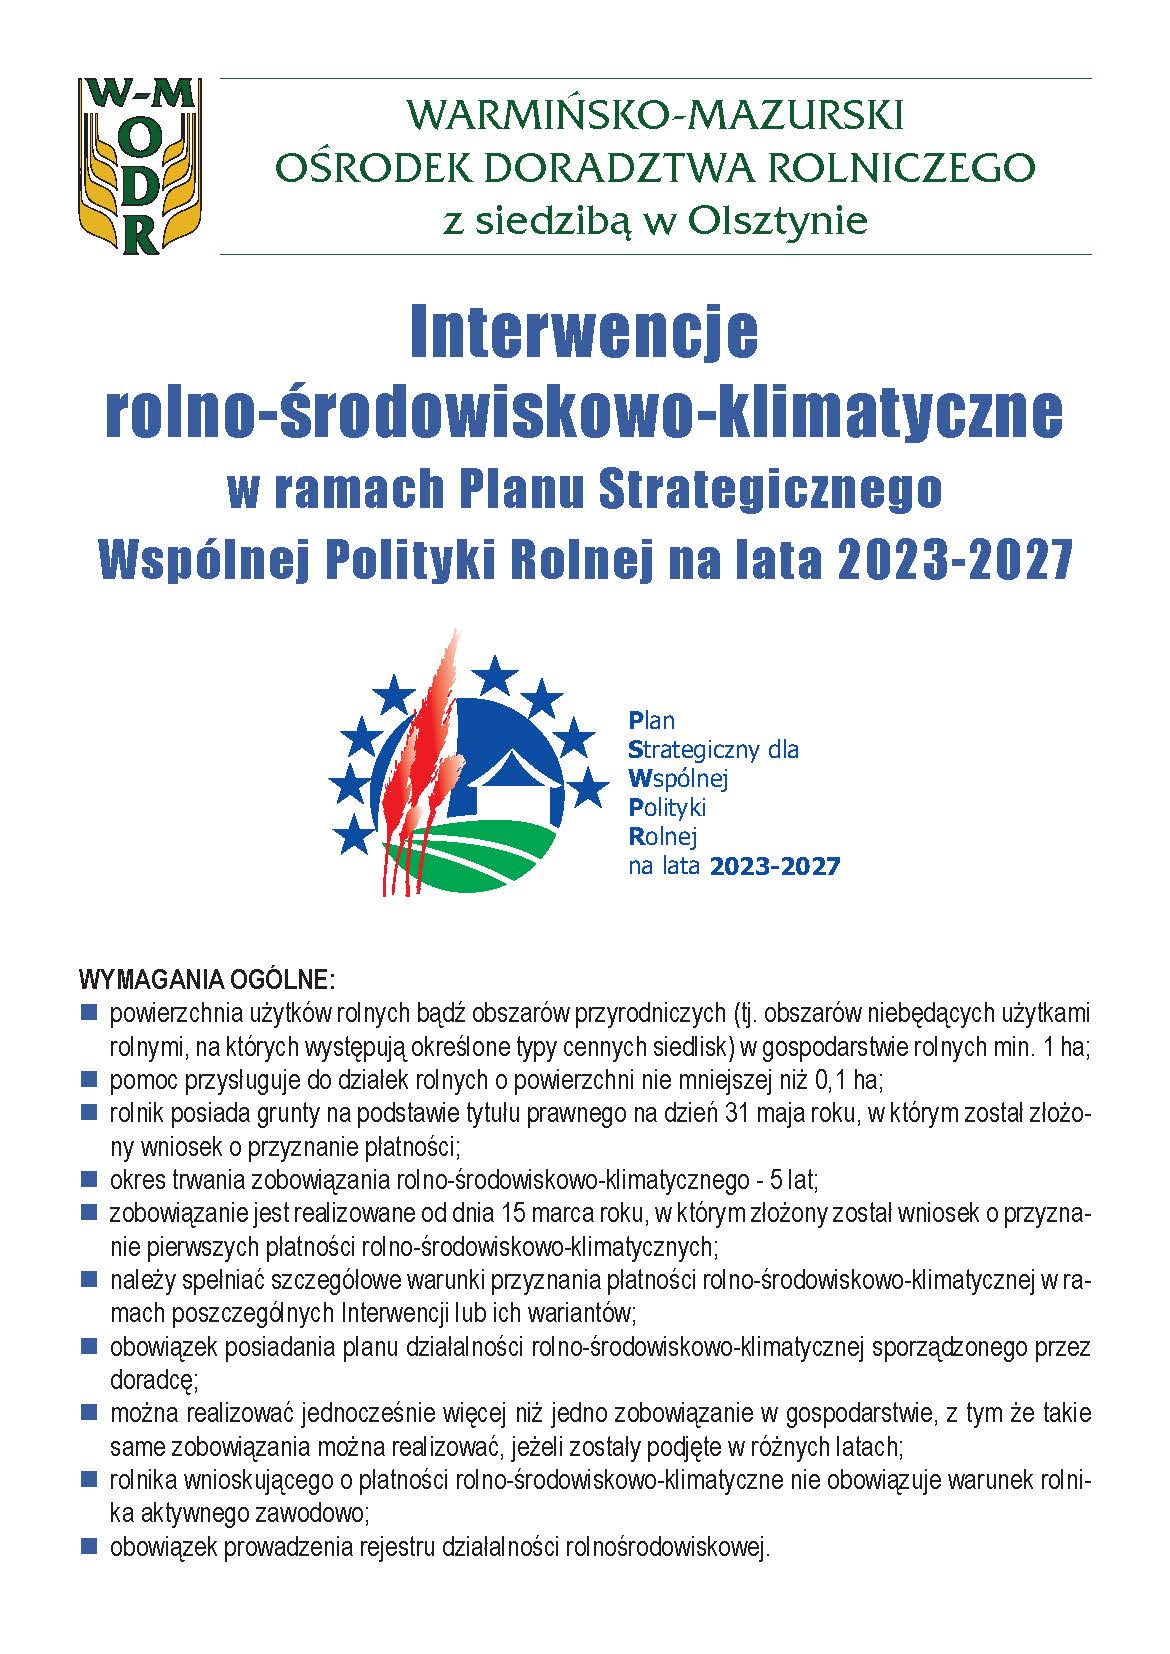 Interwencje rolno-środowiskowo-klimatyczne w ramach Planu Strategicznego Wspólnej Polityki Rolnej na lata 2023-2027